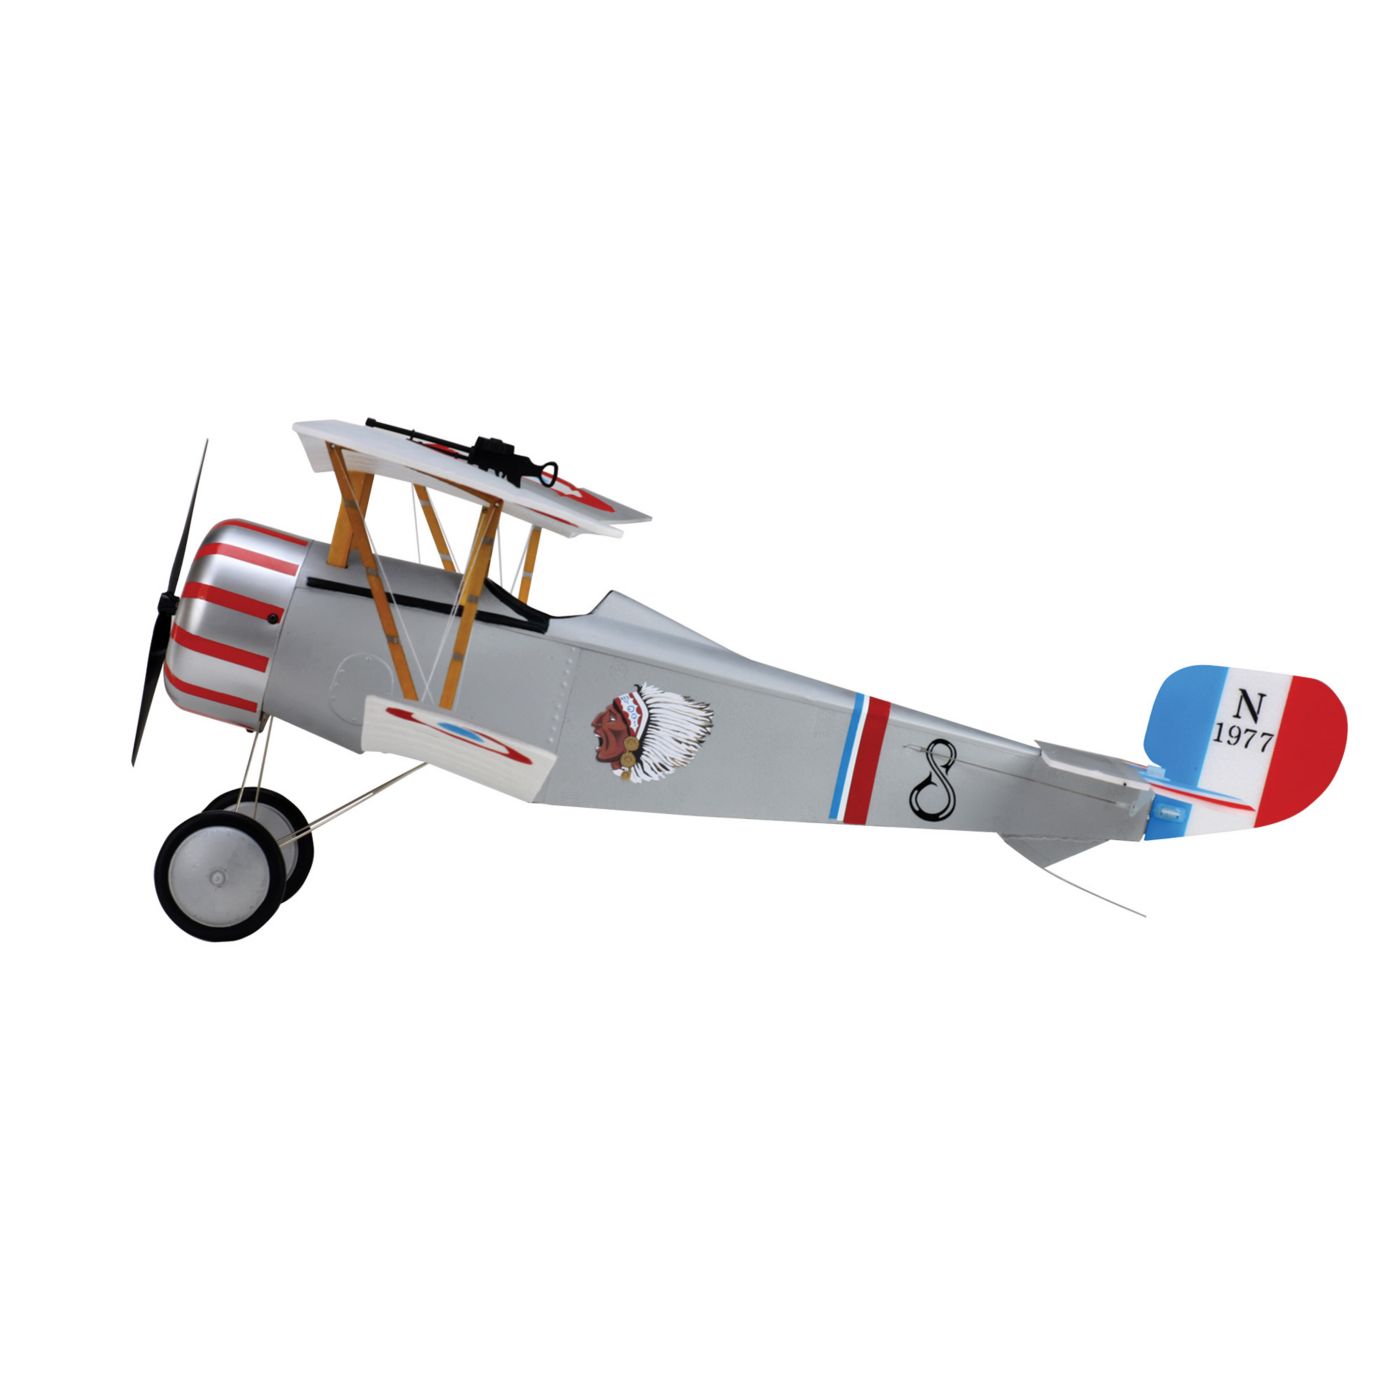 Nieuport 17 E-flite